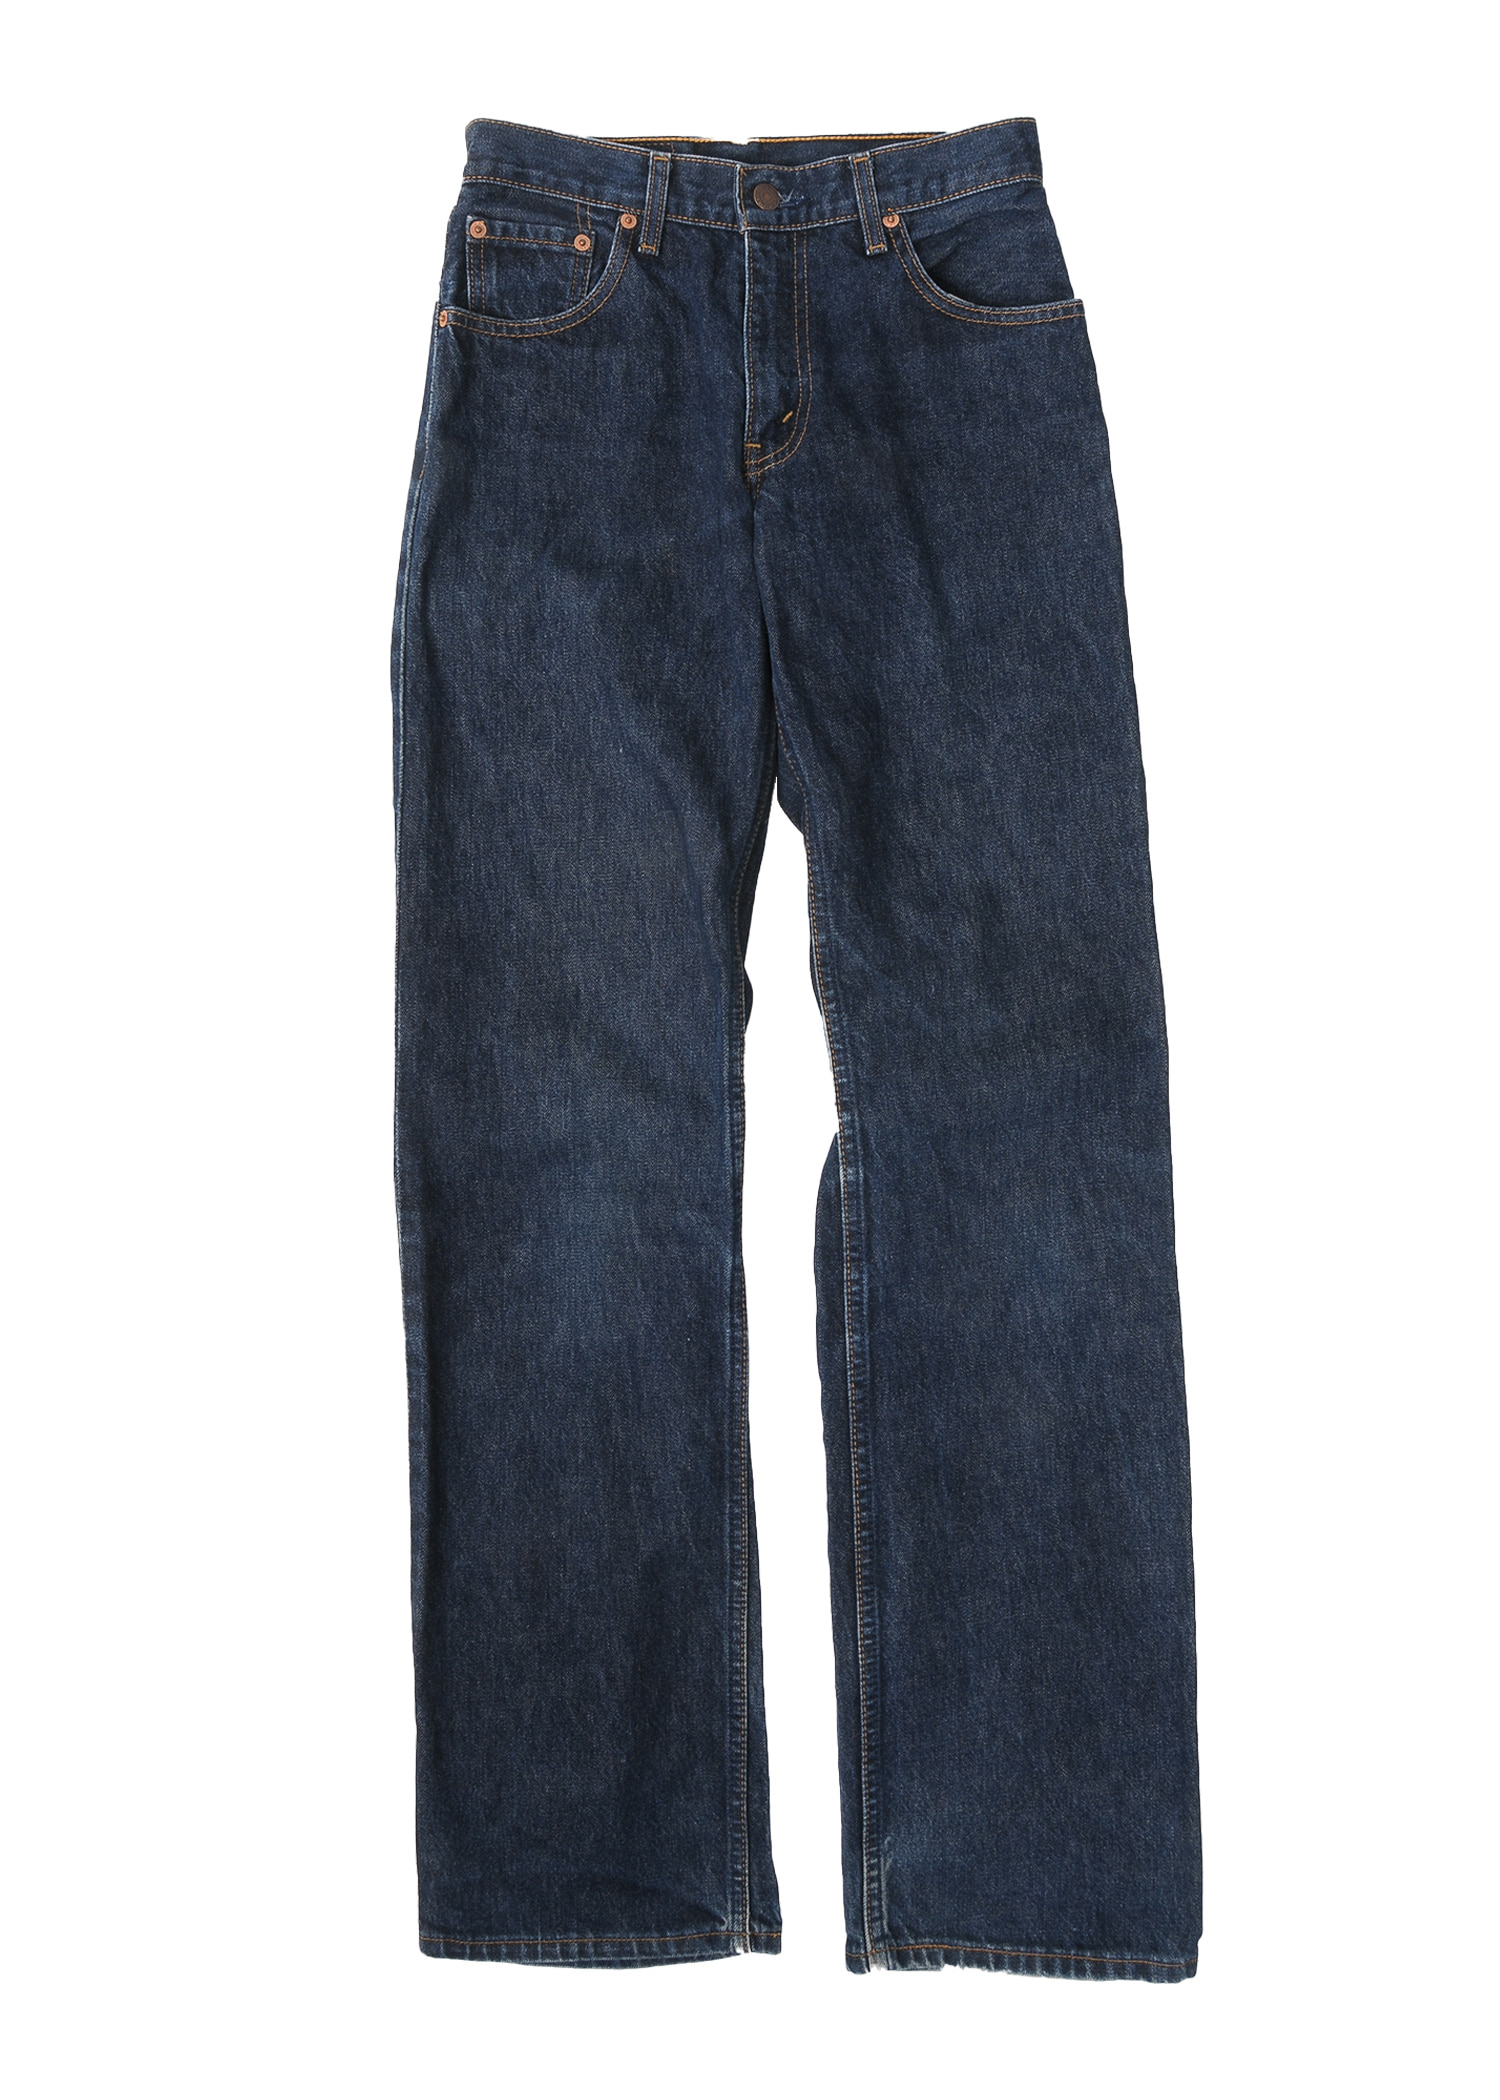 Levis 506 jeans